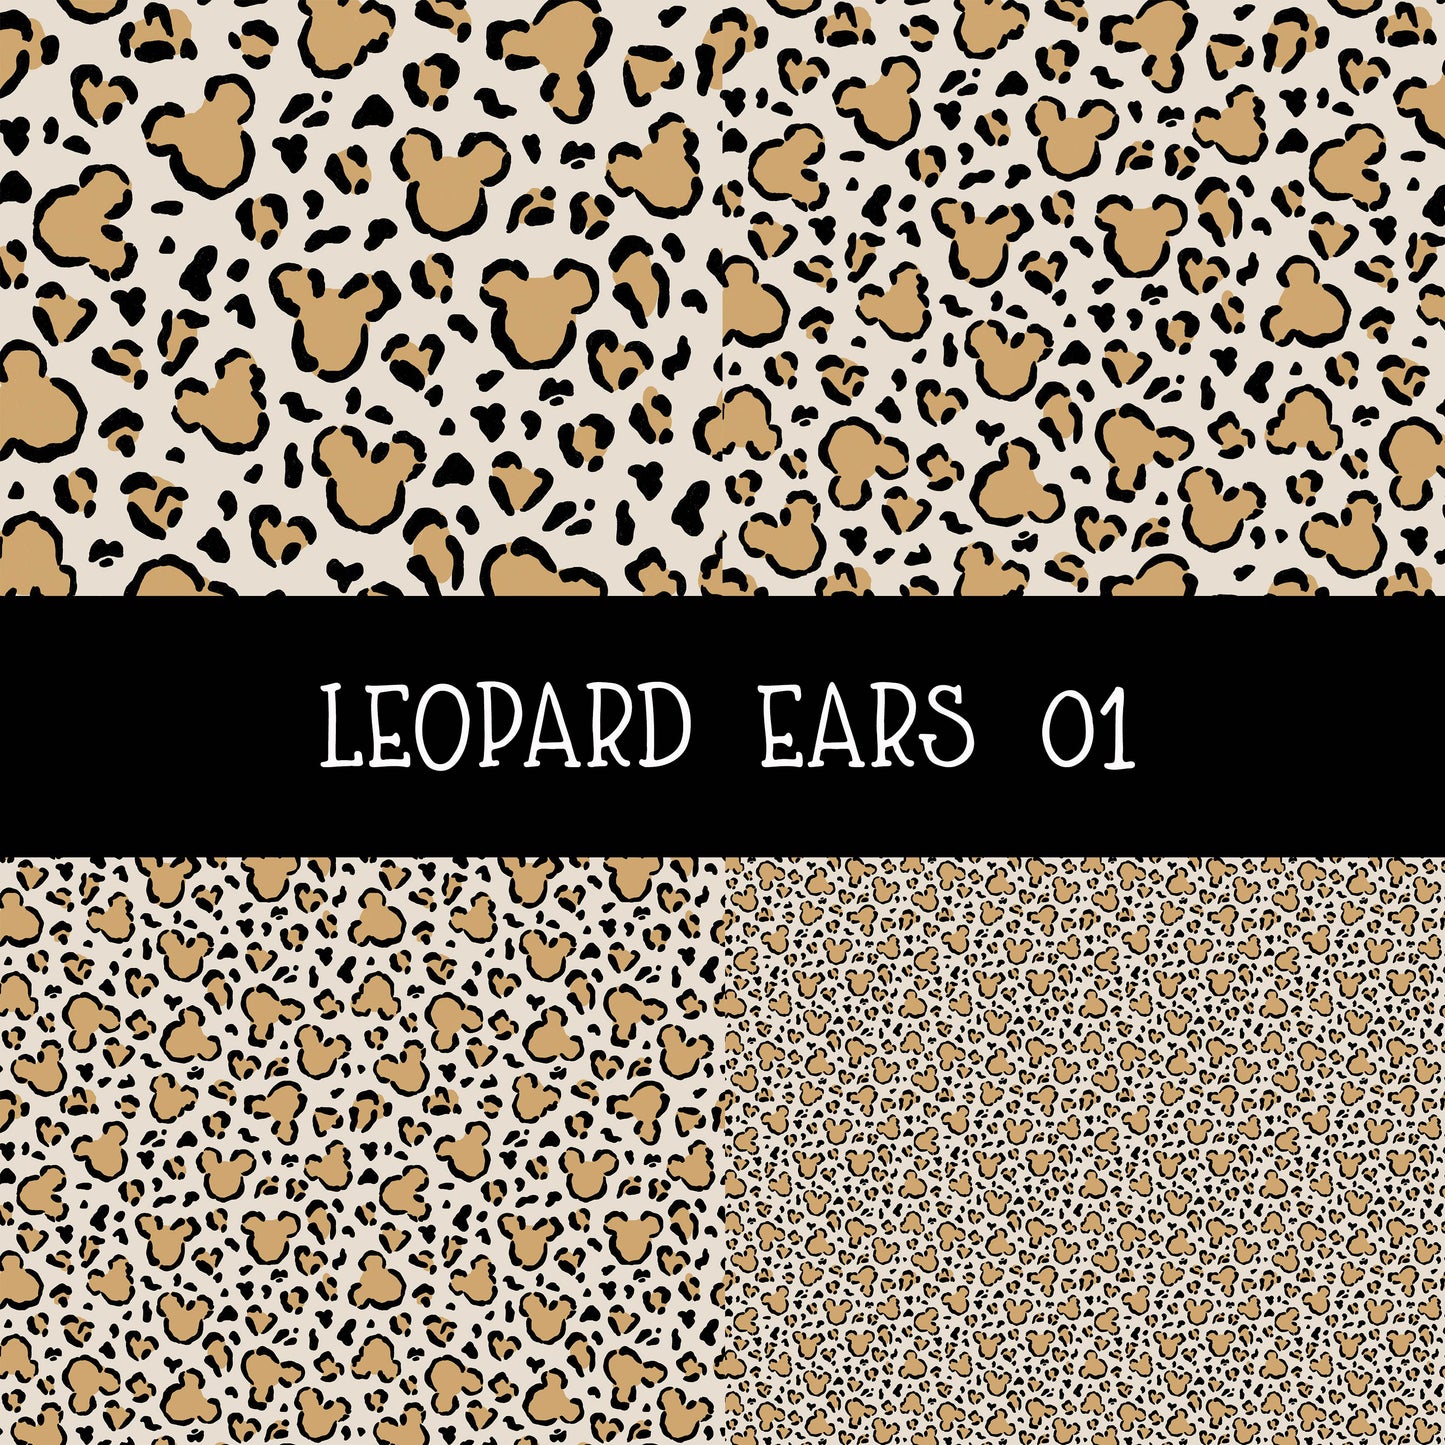 Leopard Ears 01